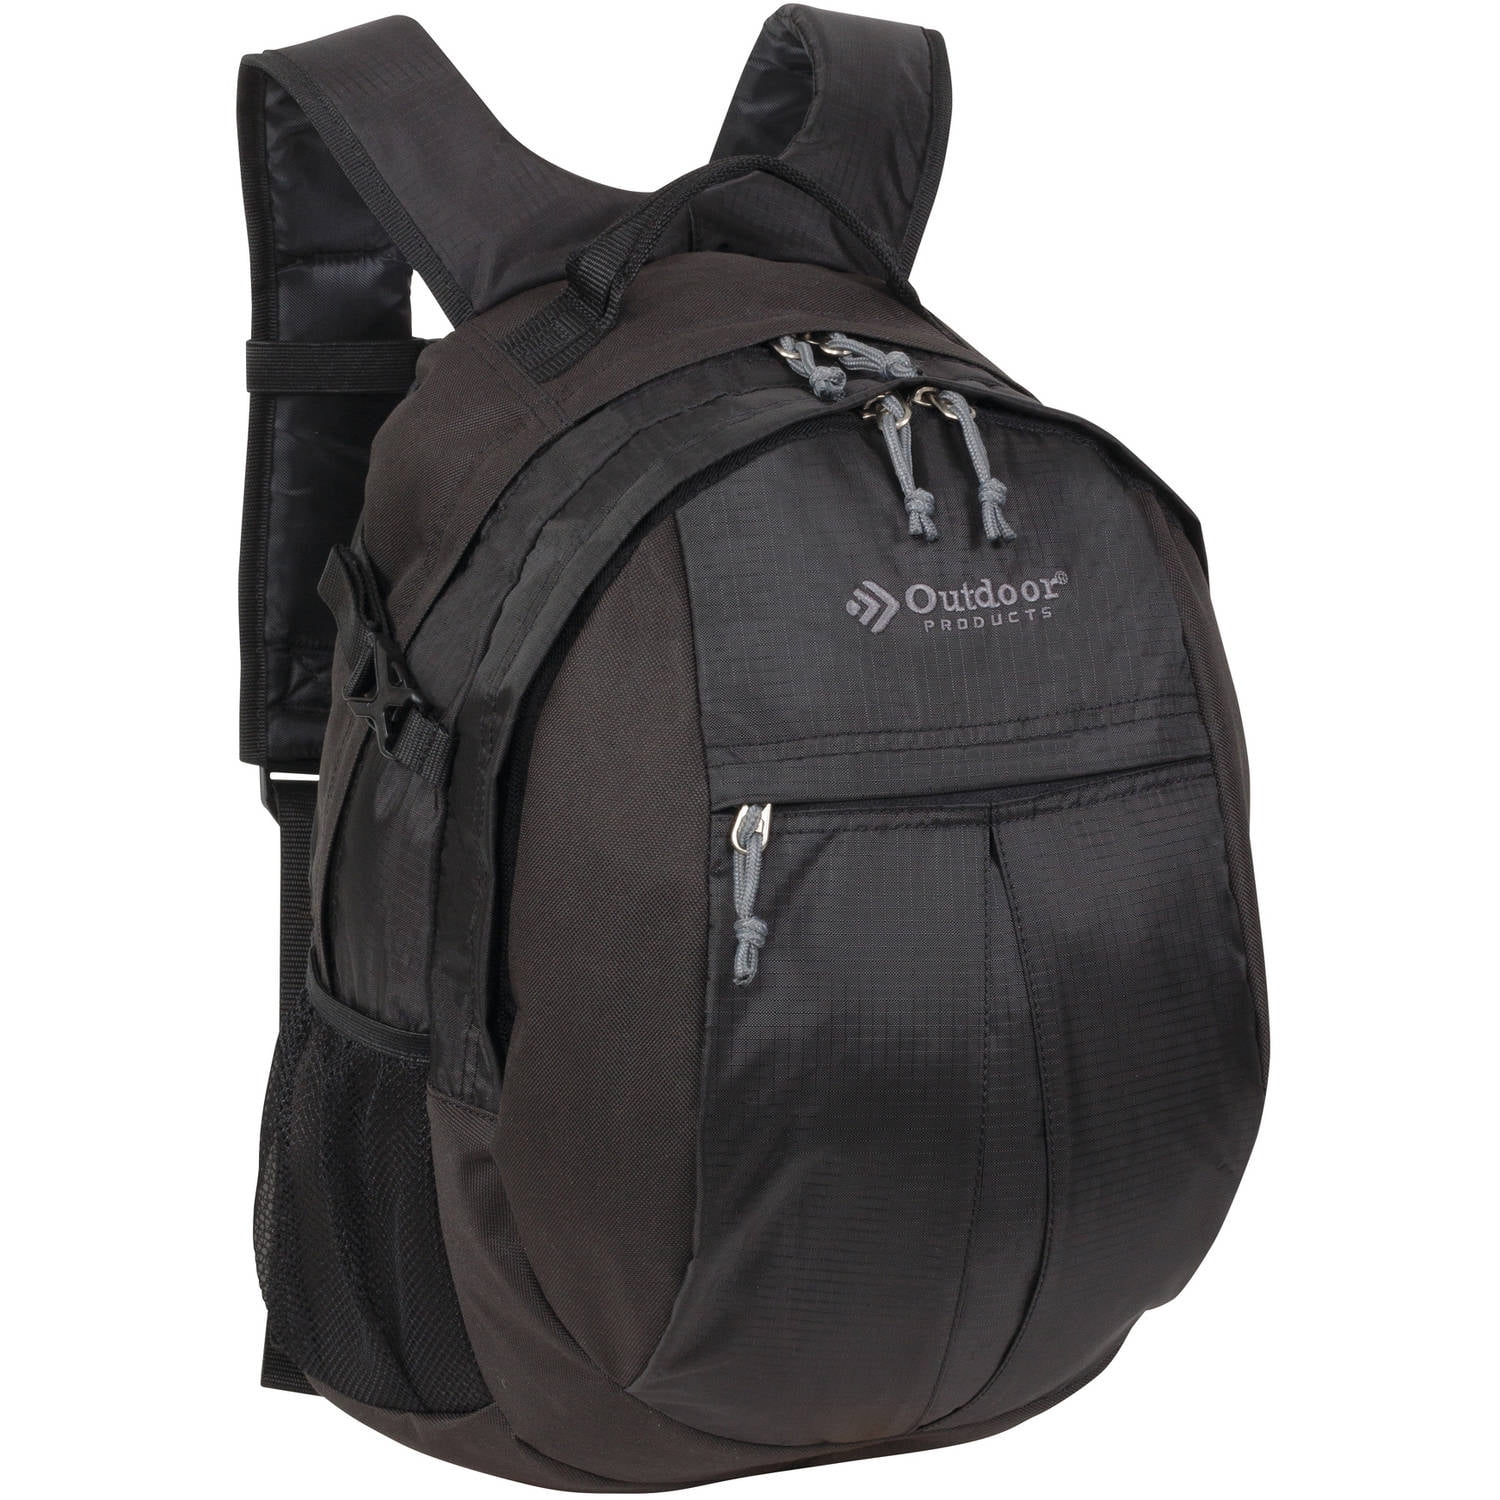 Niet doen heelal Zoek machine optimalisatie Outdoor Products Traverse 25 Ltr Backpack, Black, Unisex - Walmart.com